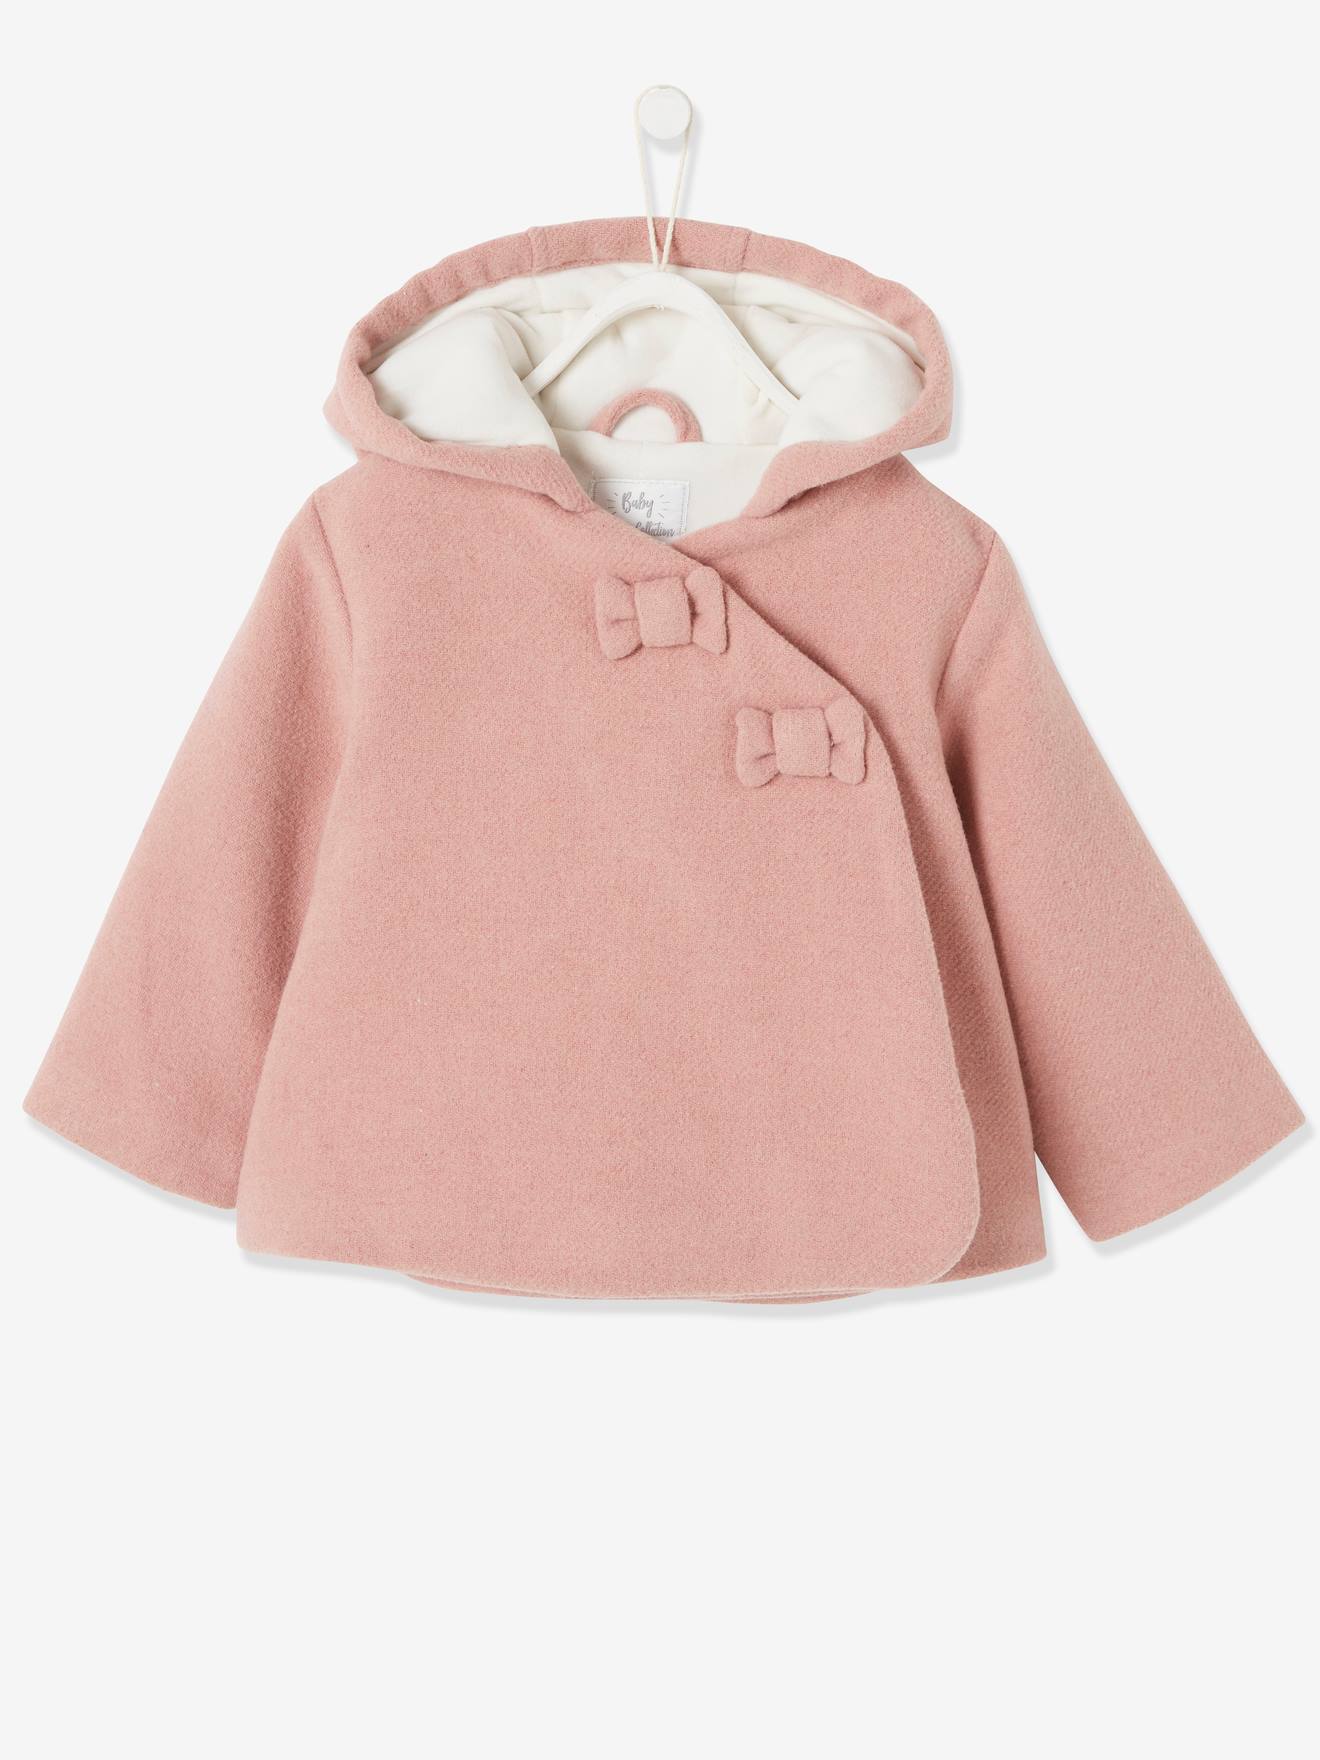 Manteau à capuche bébé fille lainage doublé et ouatiné - vieux rose, Bébé